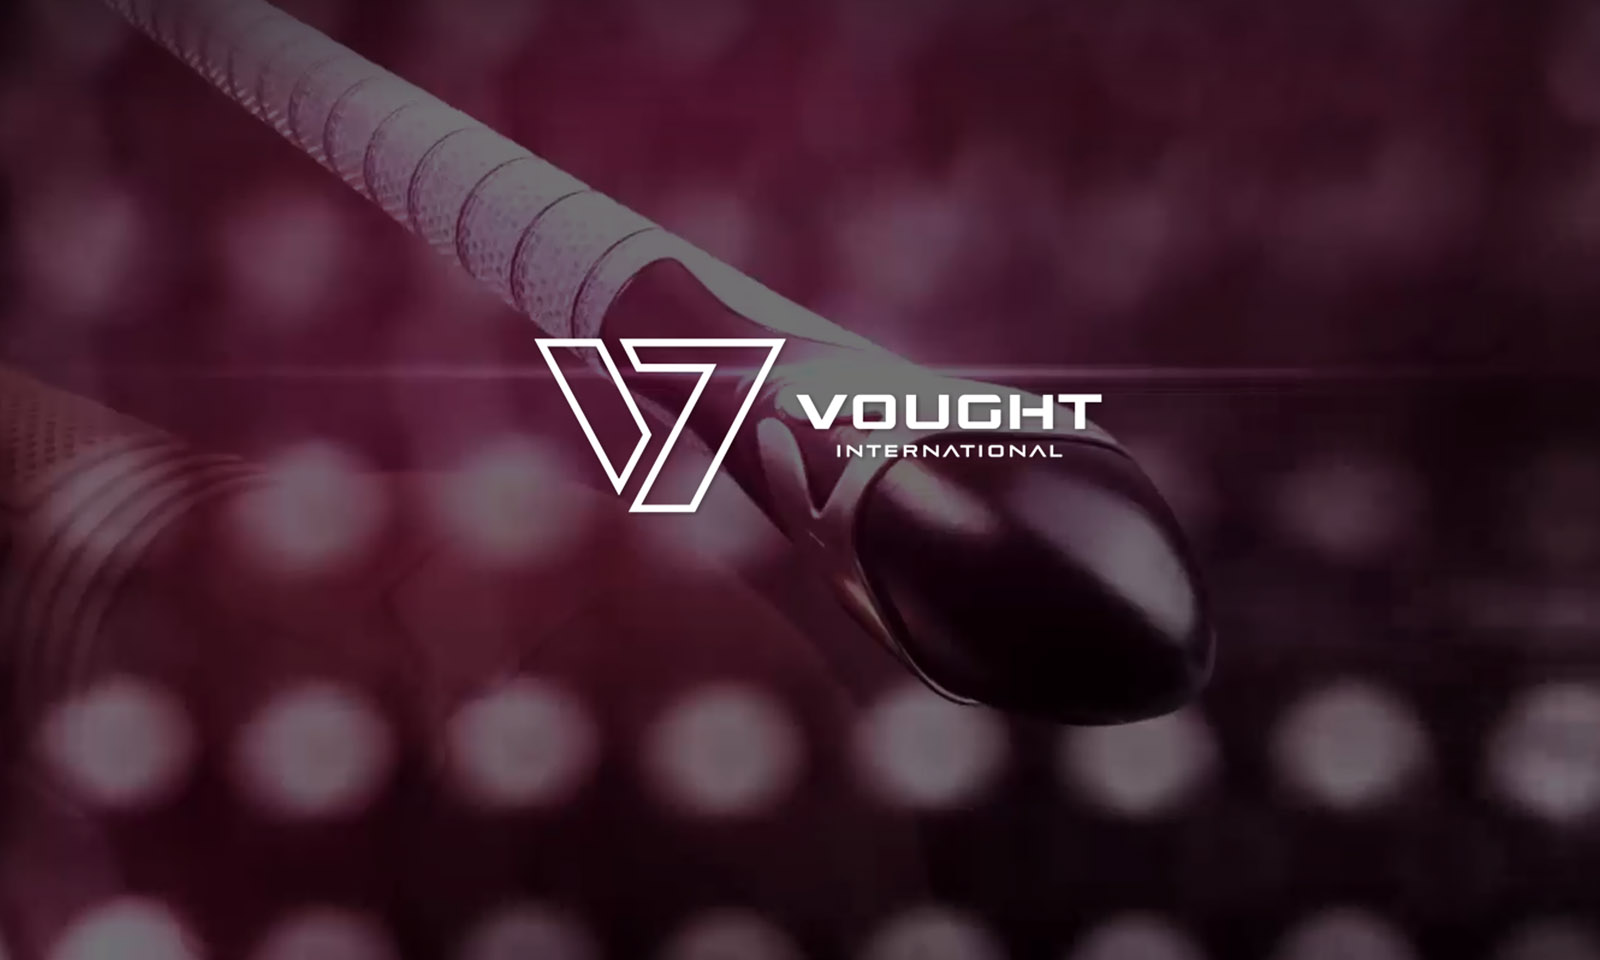 Imagem com logo da Vought International centralizada e um sex toy inspirado em The Boys ao fundo.